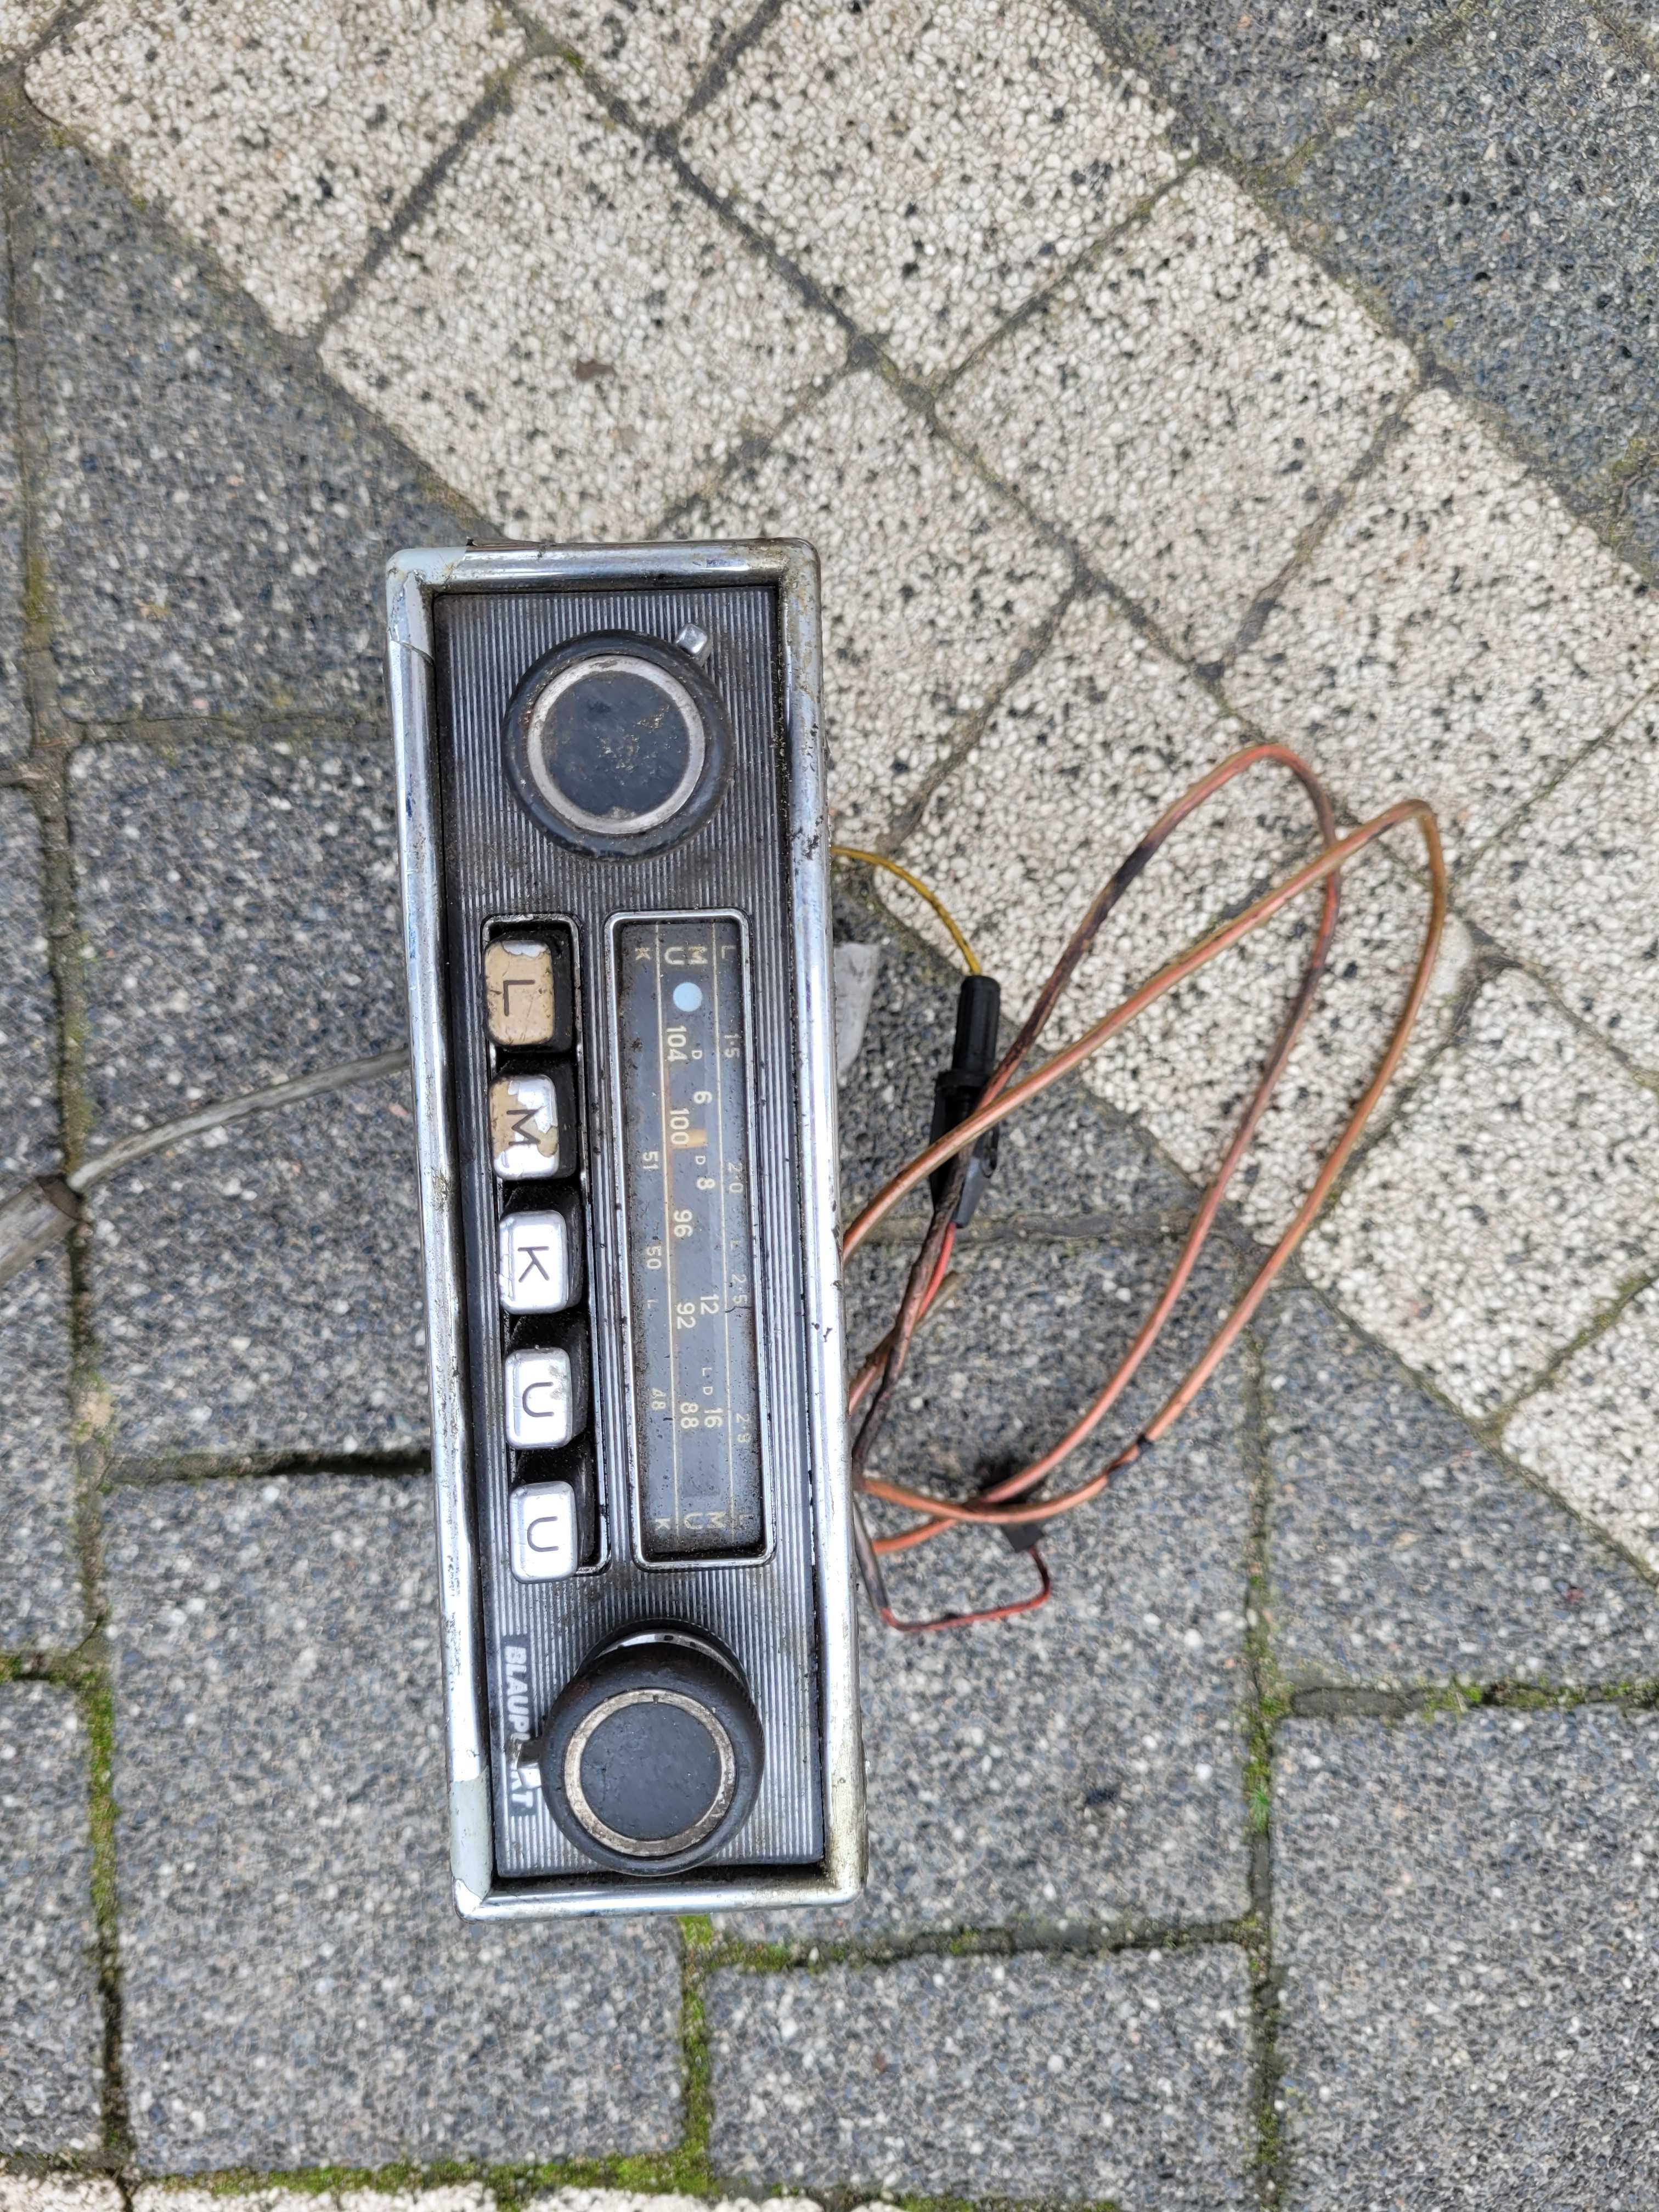 Radio samochodowe Blaupunkt z lat 60-70